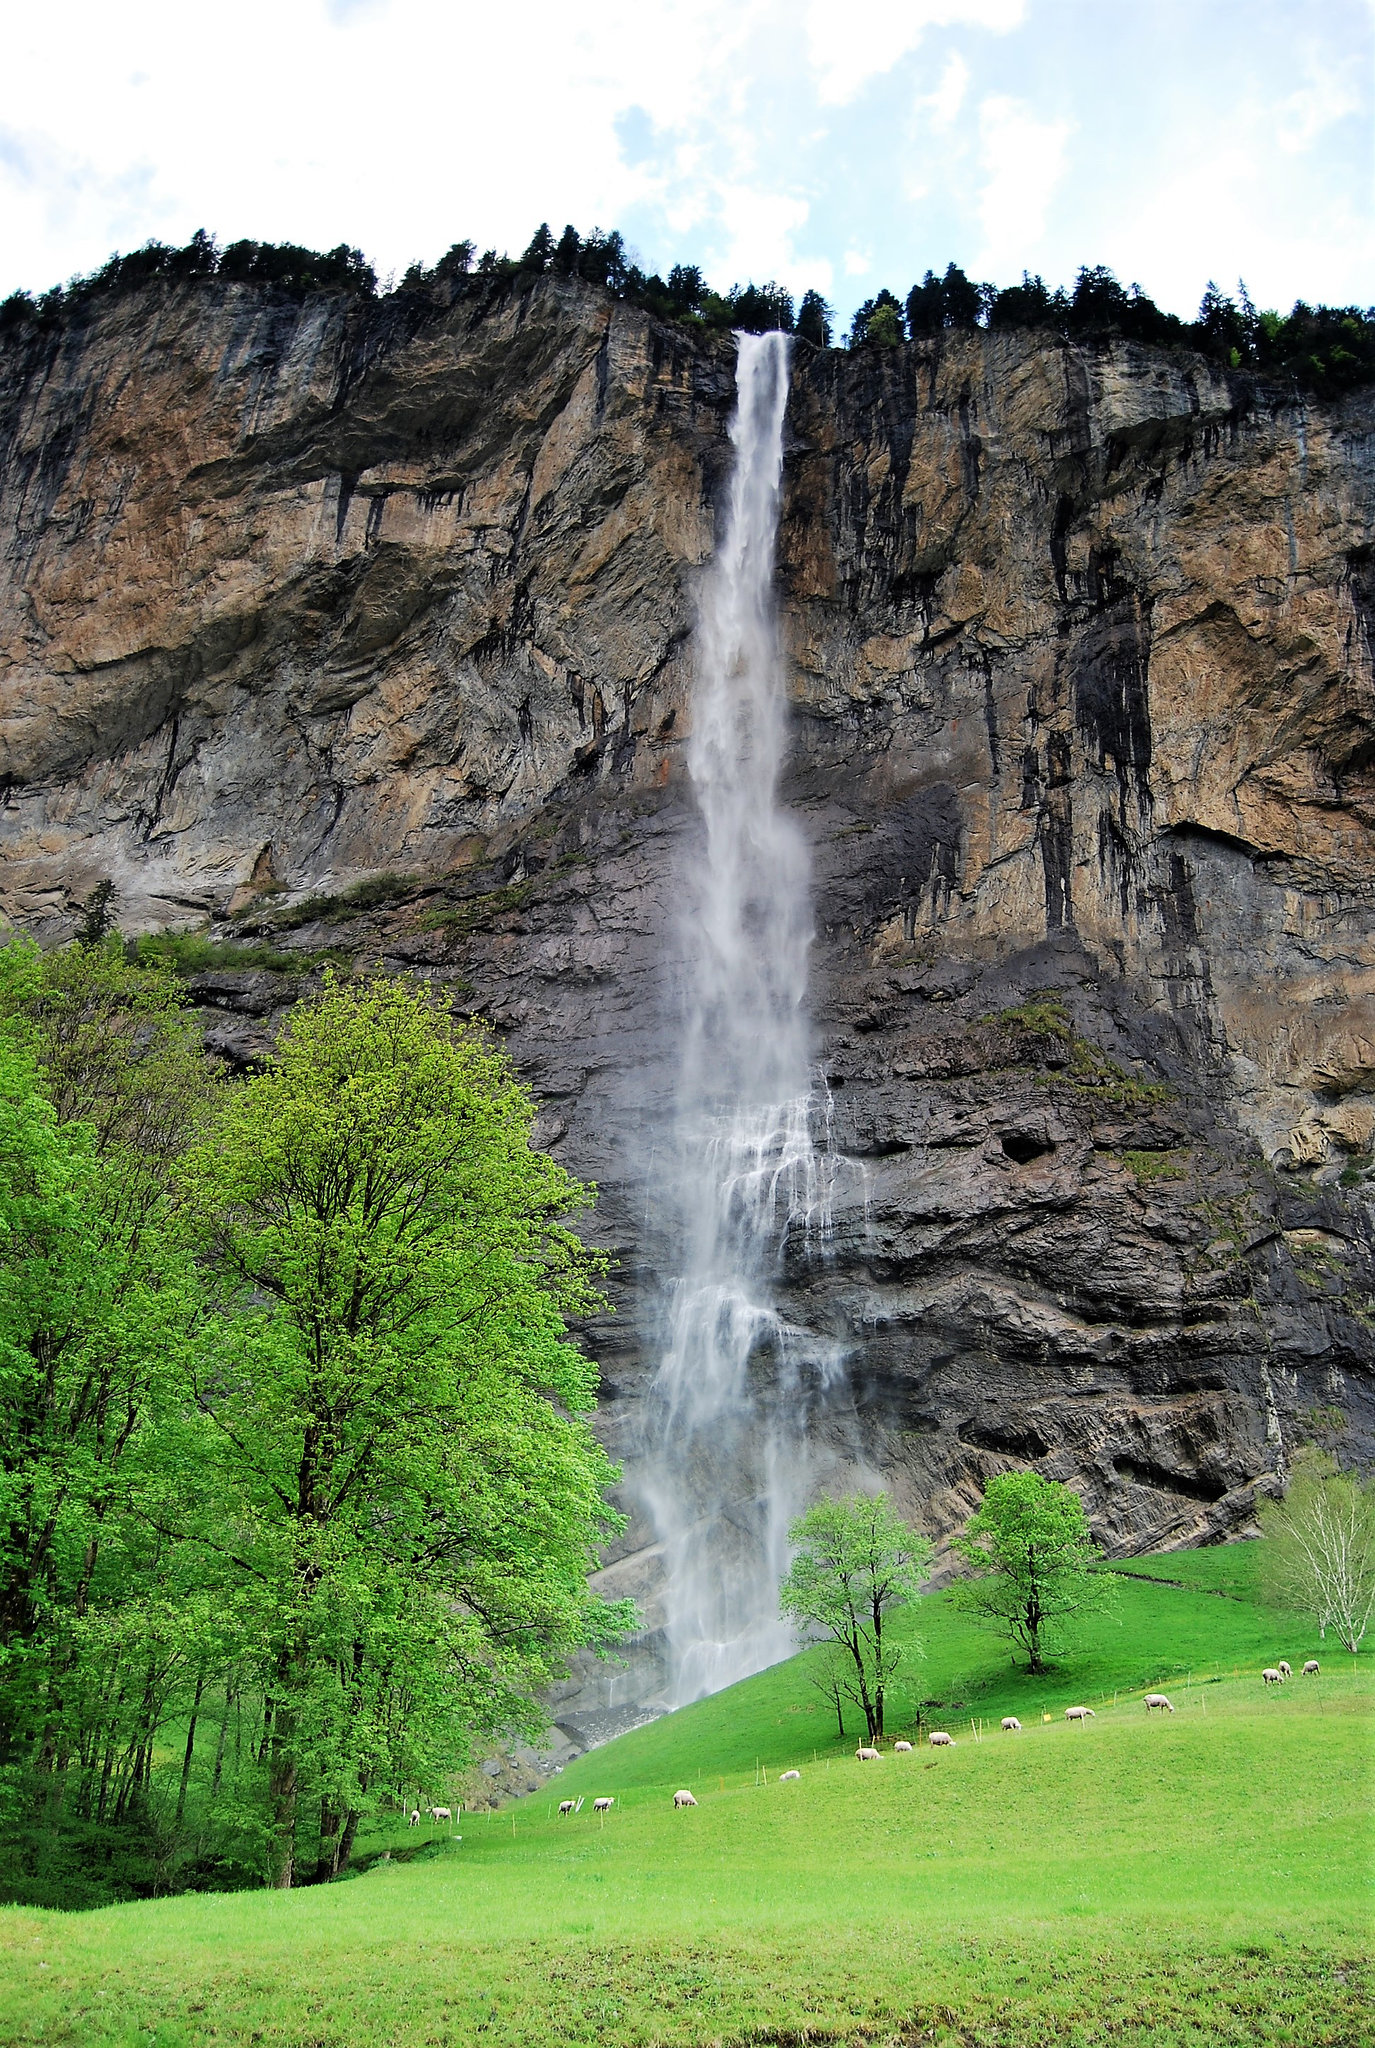 Lauterbrunnen, Staubbach falls (and a fence) HFF